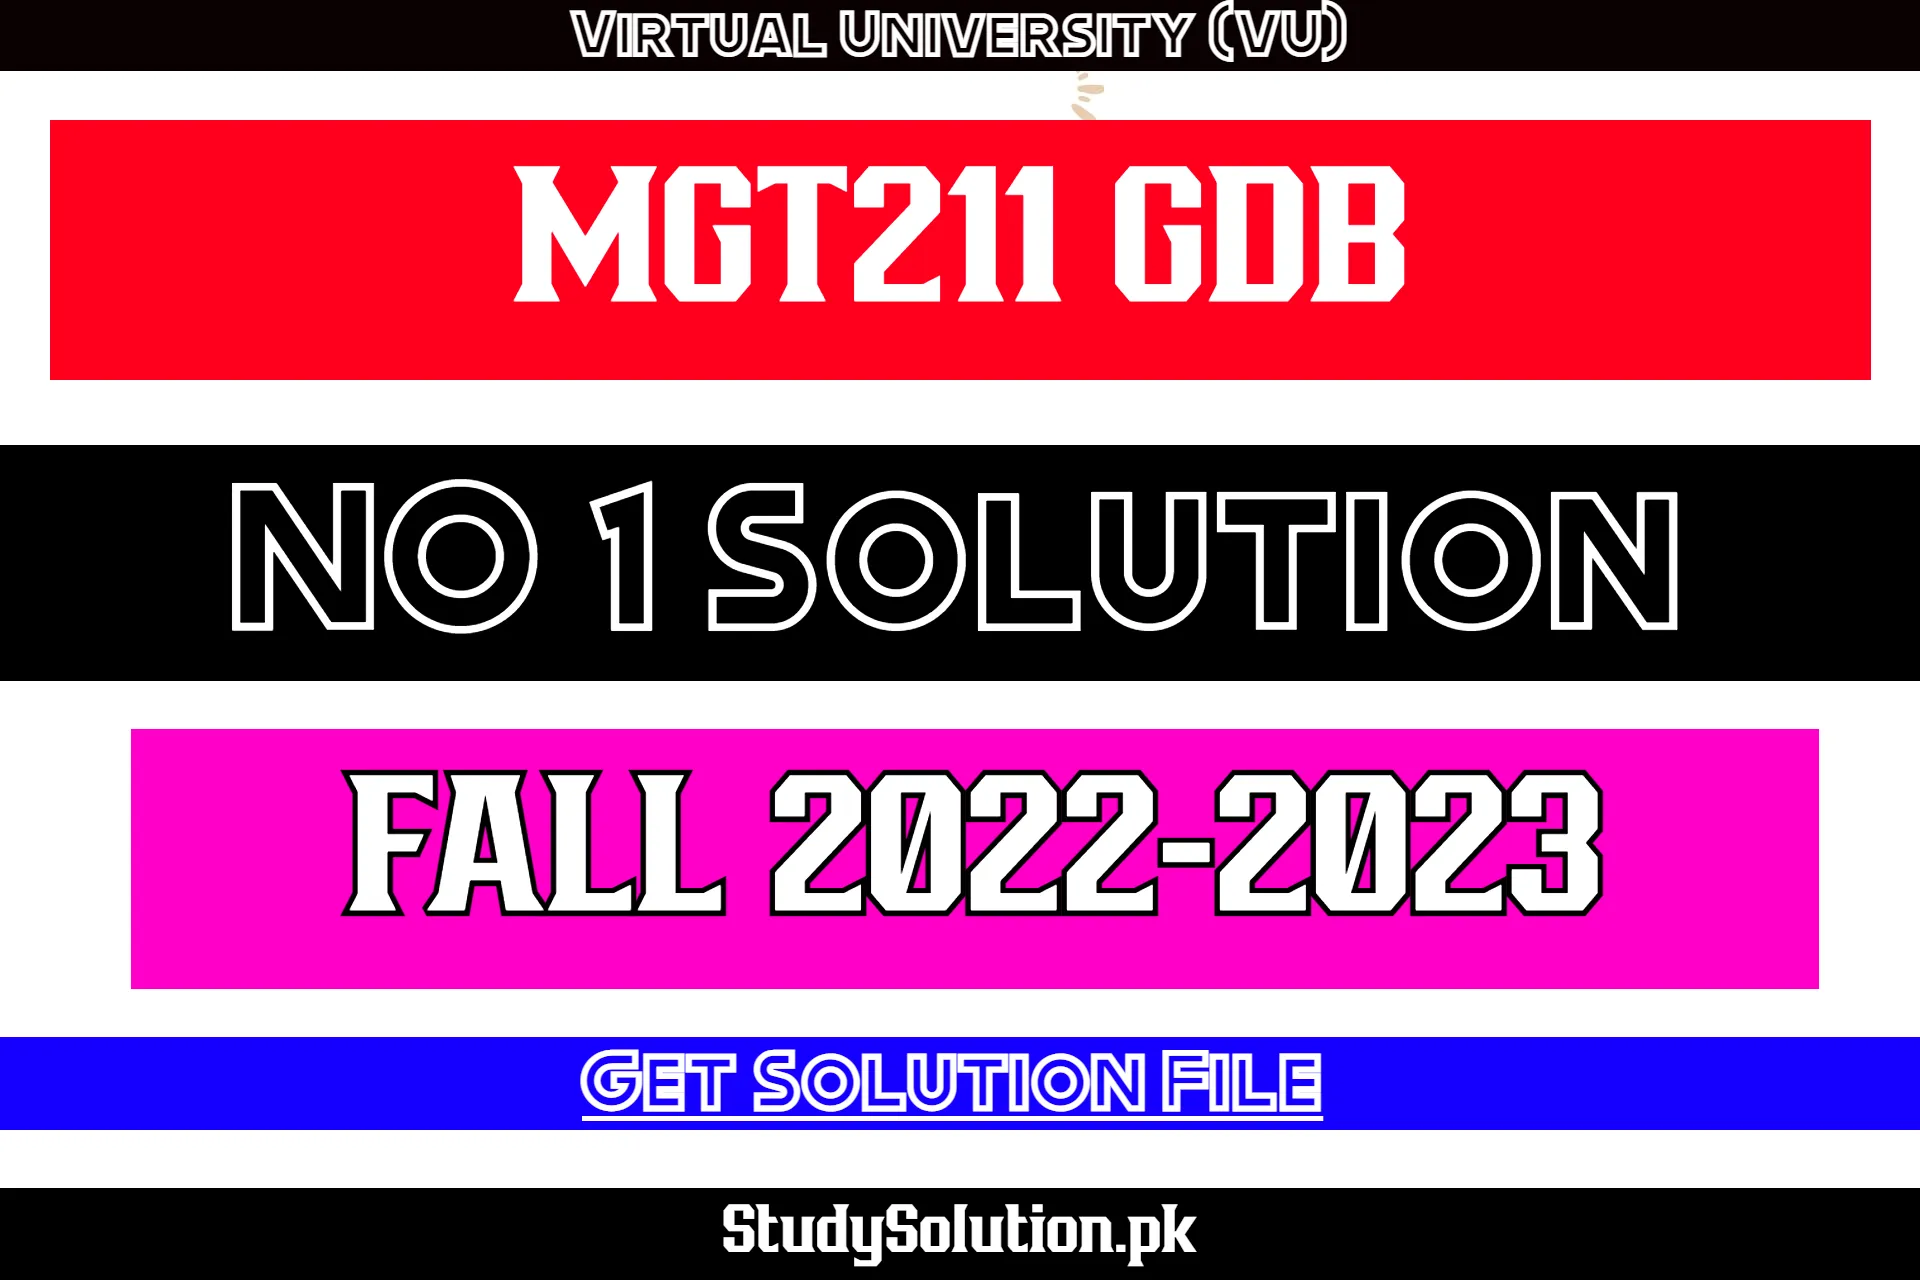 MGT211 GDB No 1 Solution Fall 2022